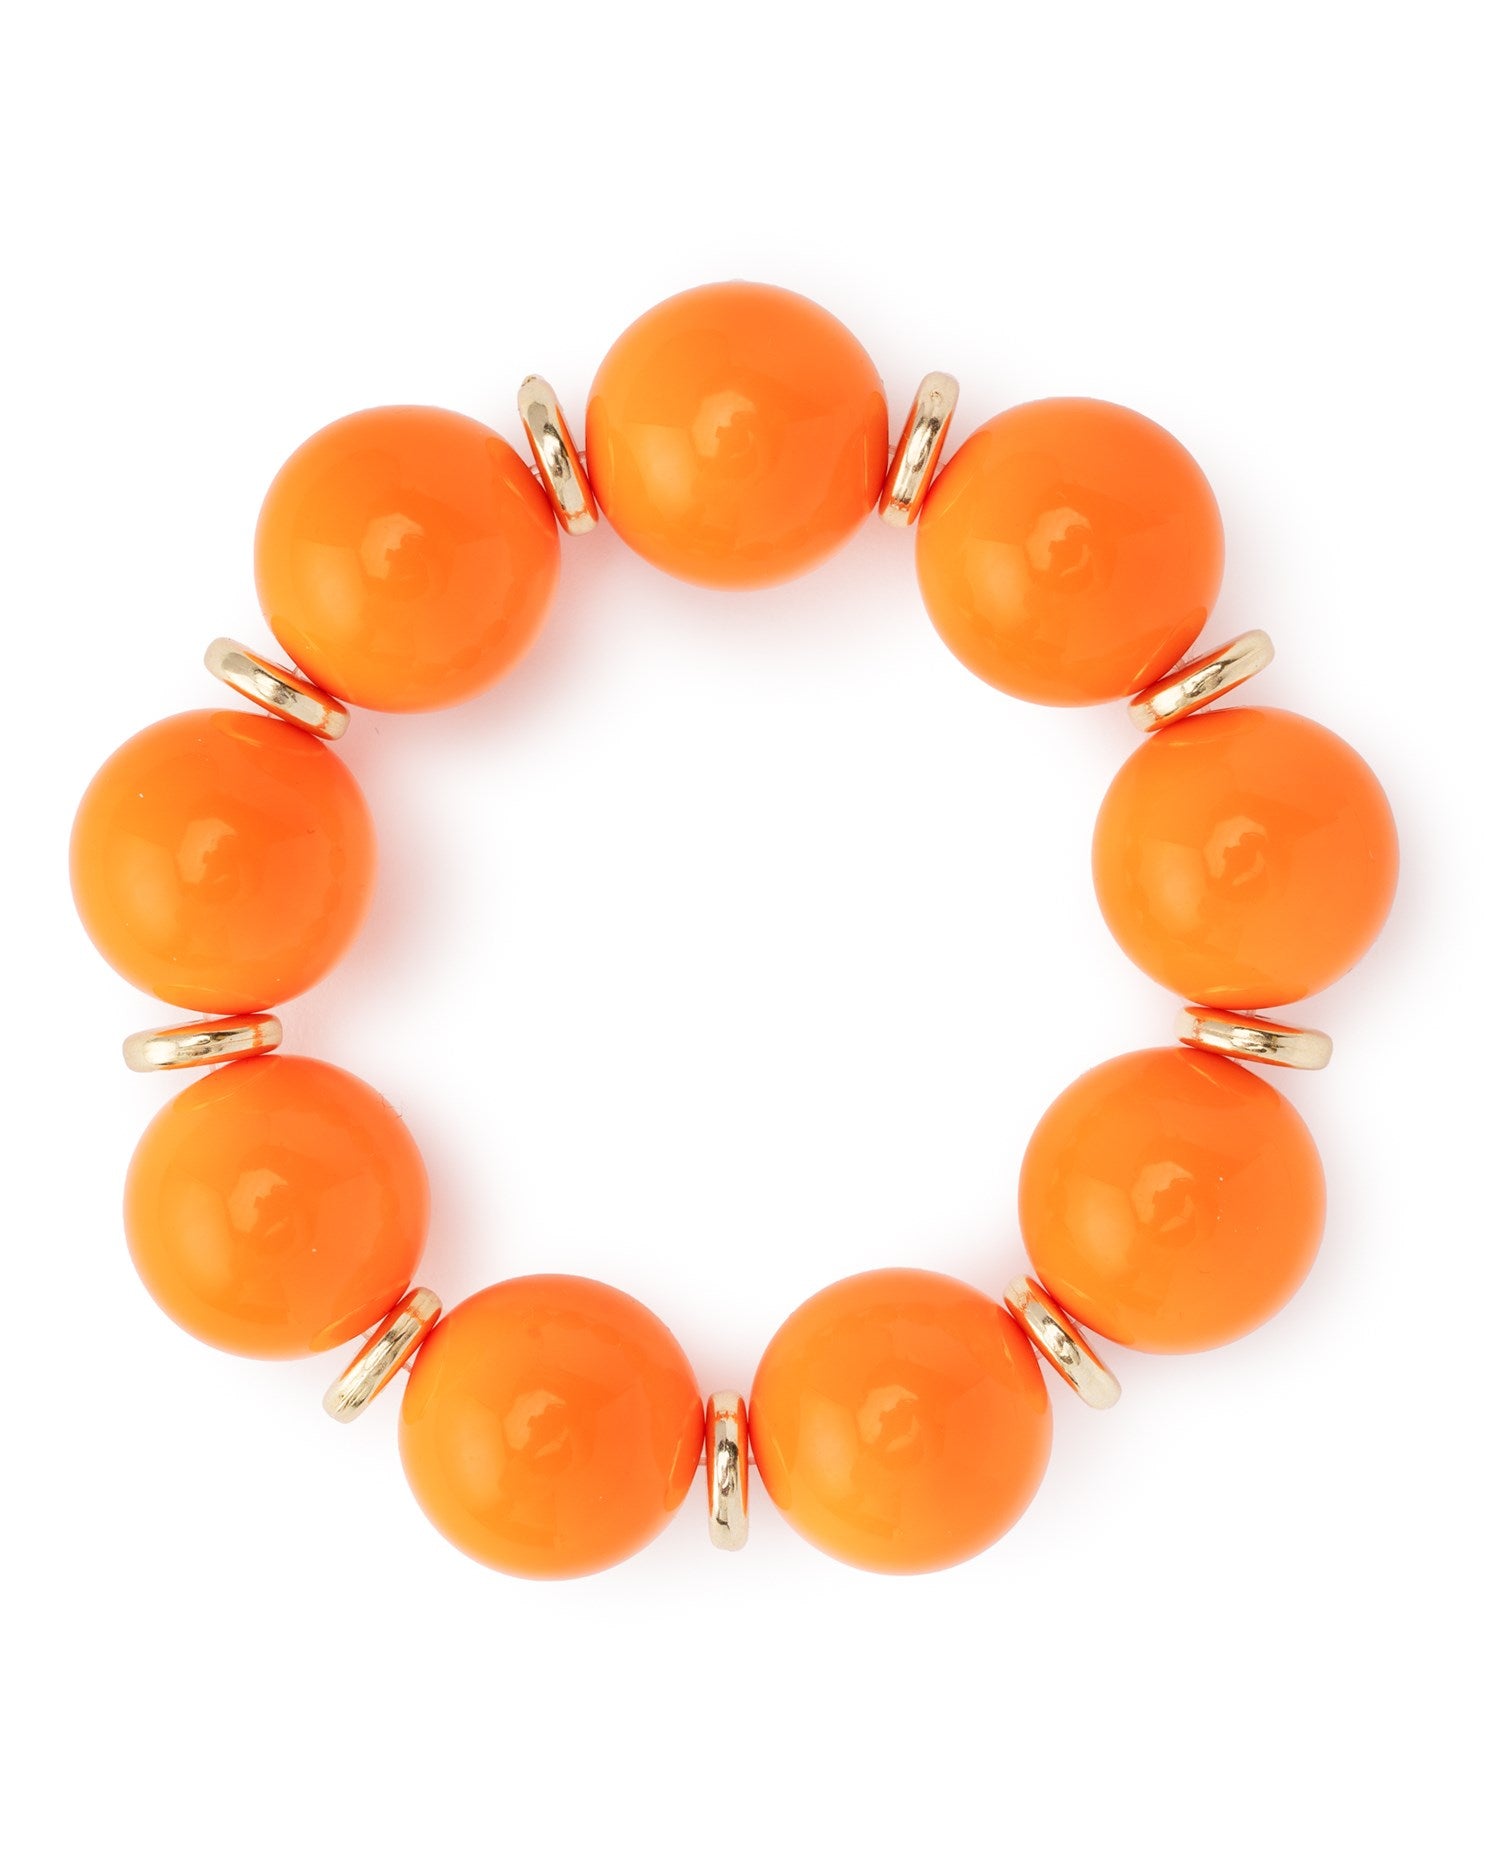 Bracciale elastico con sfere in acrilico arancio, con rondelle in metallo - Mya Accessories